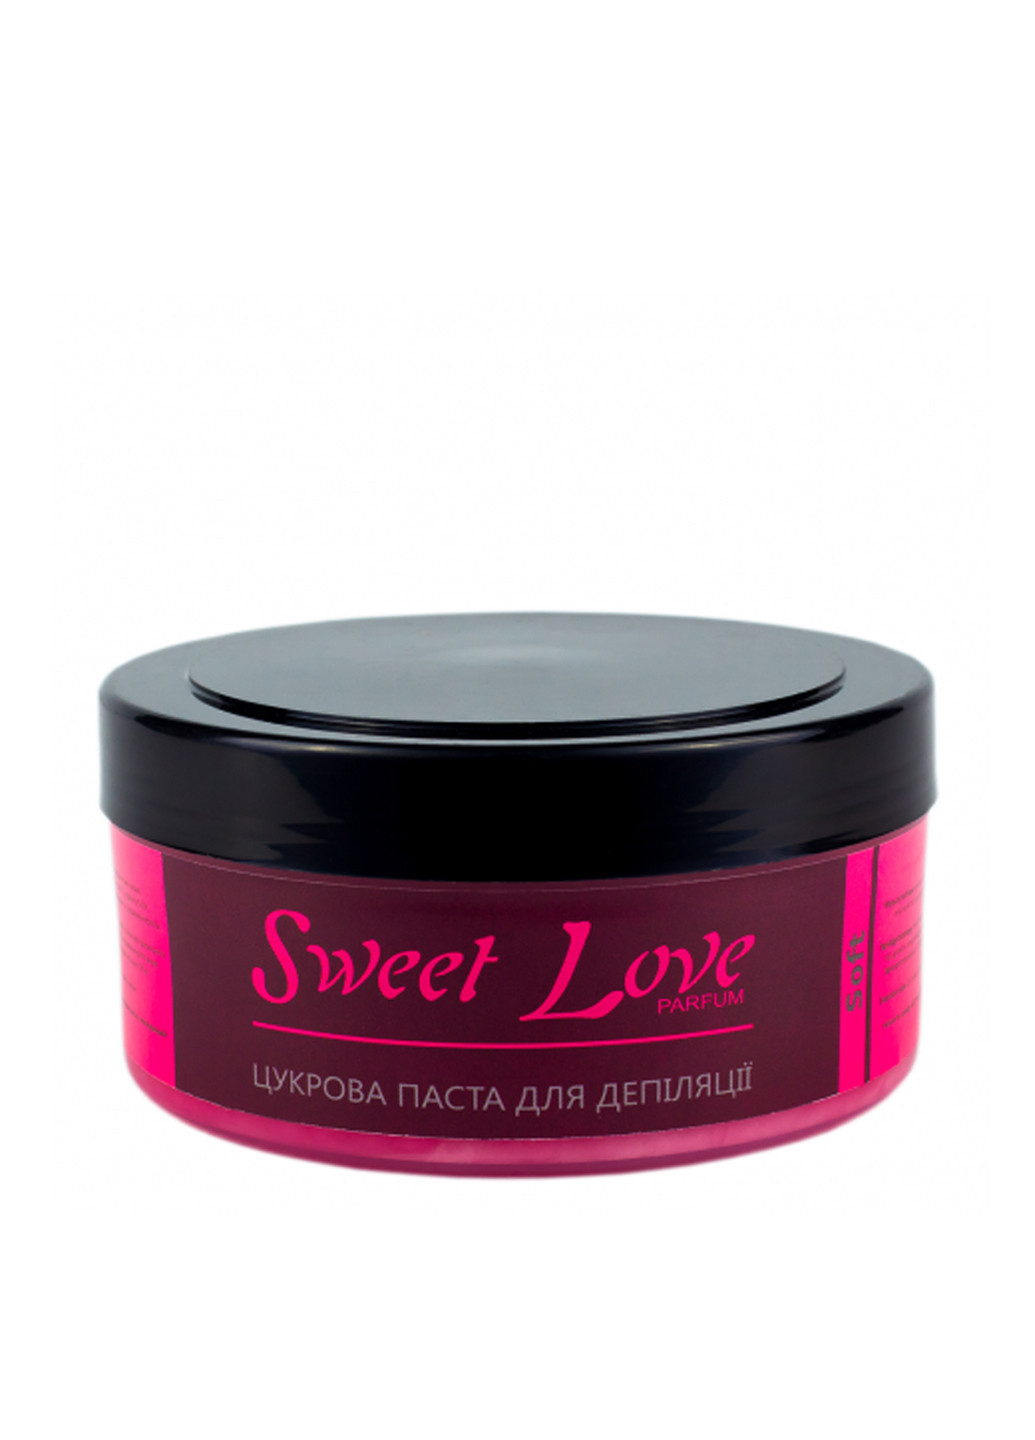 Паста парфюмированная цукрова для депіляції Тверда Sweet Love, 400 г Silk & Soft (89126795)